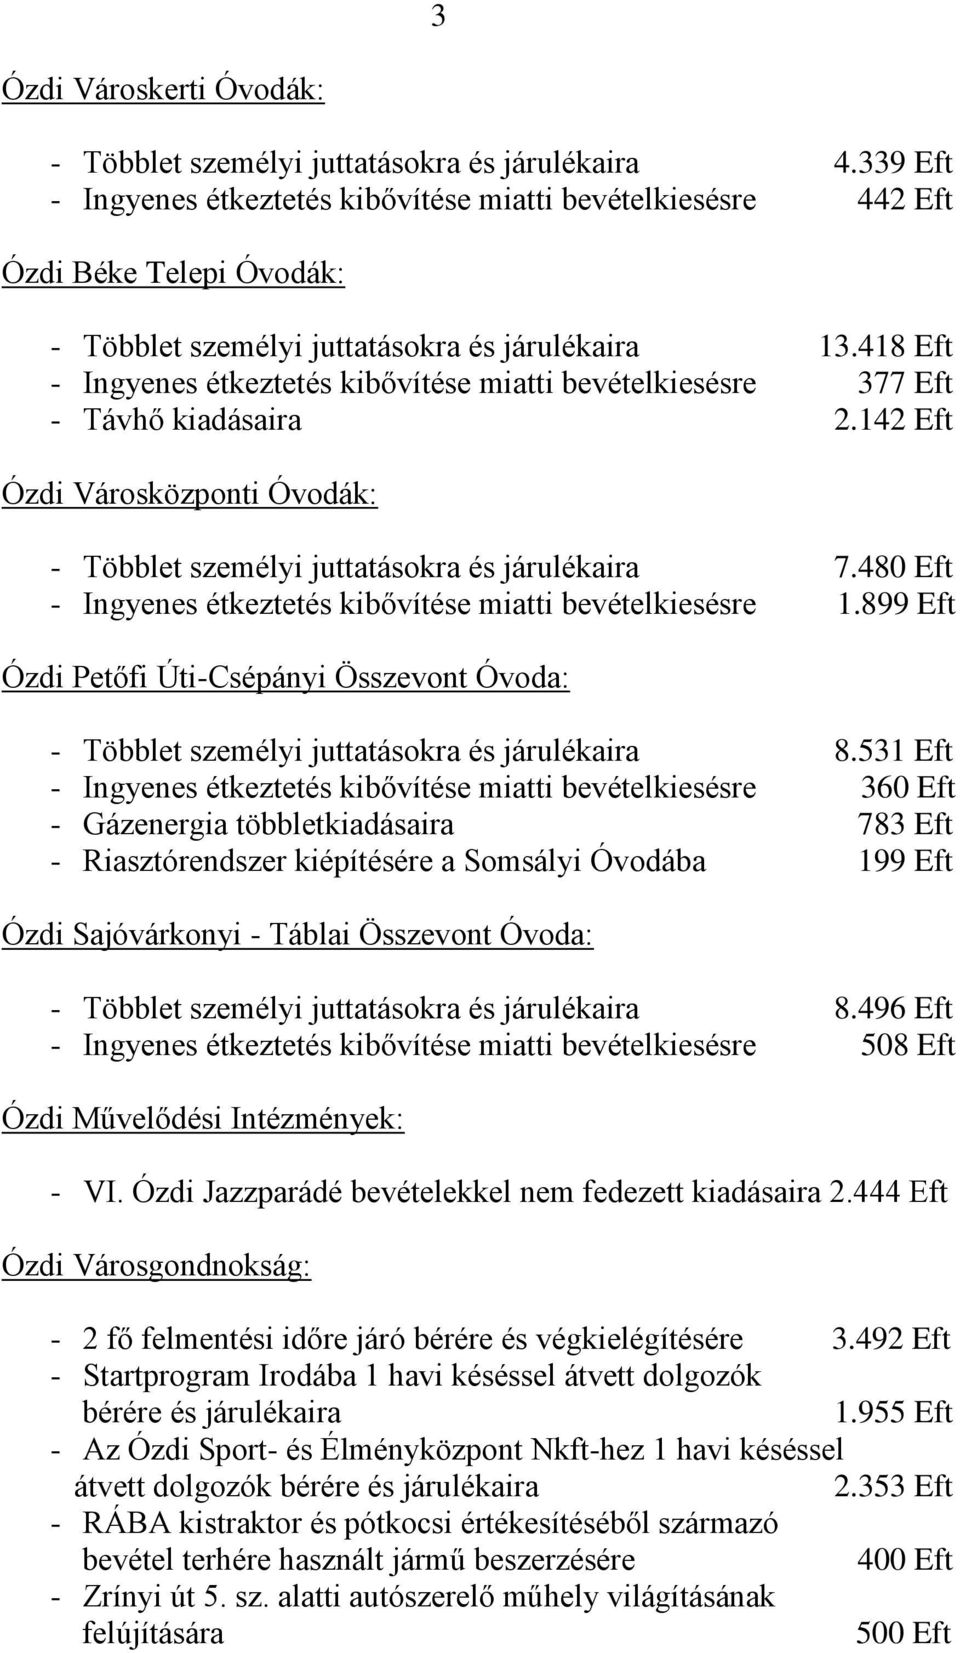 418 Eft - Ingyenes étkeztetés kibővítése miatti bevételkiesésre 377 Eft - Távhő kiadásaira 2.142 Eft Ózdi Városközponti Óvodák: - Többlet személyi juttatásokra és járulékaira 7.